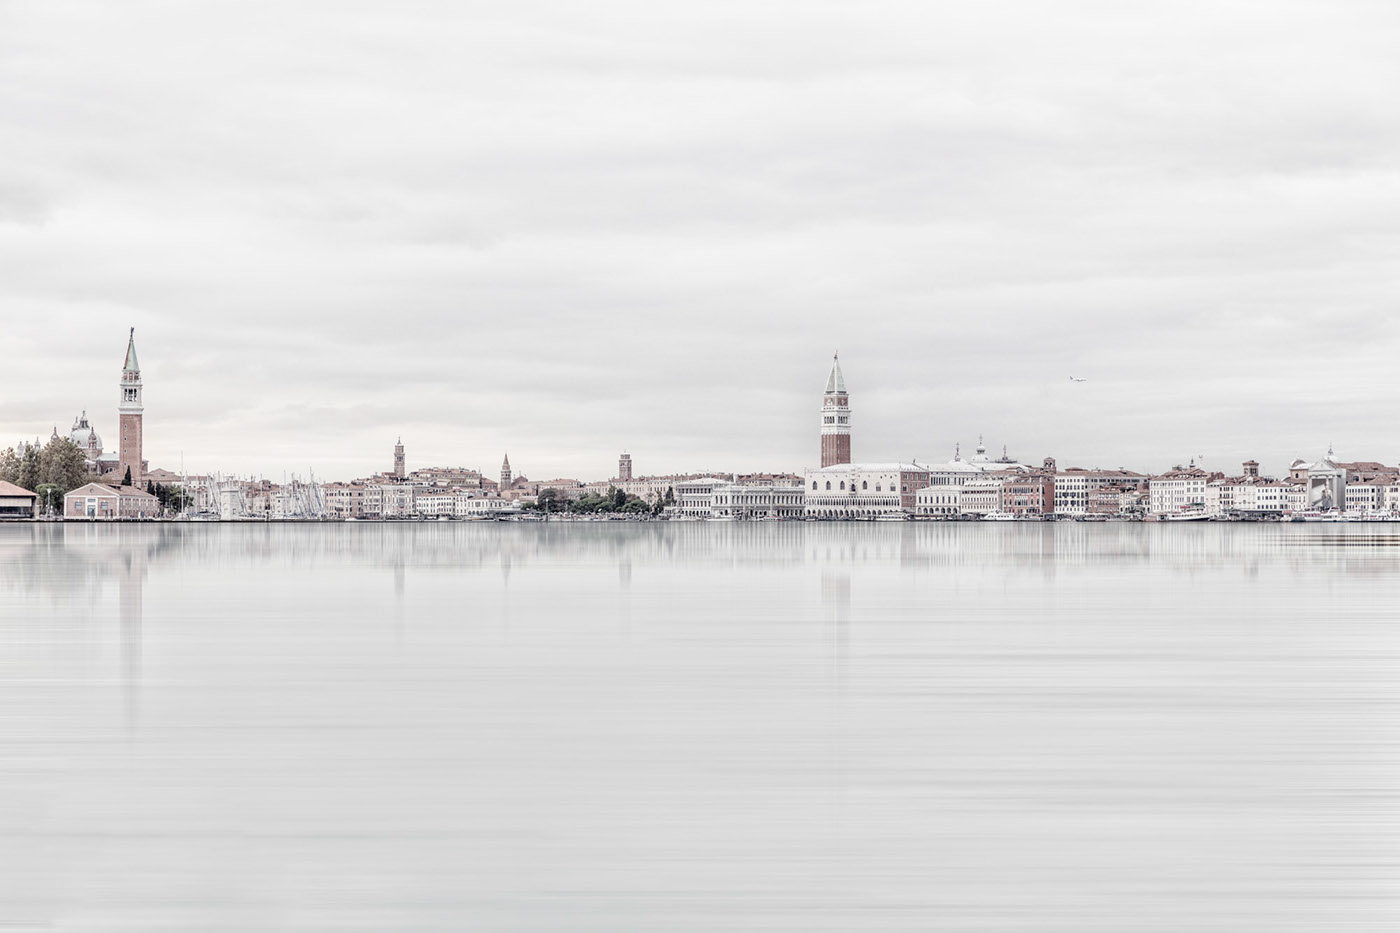 venezia historic city cityscape